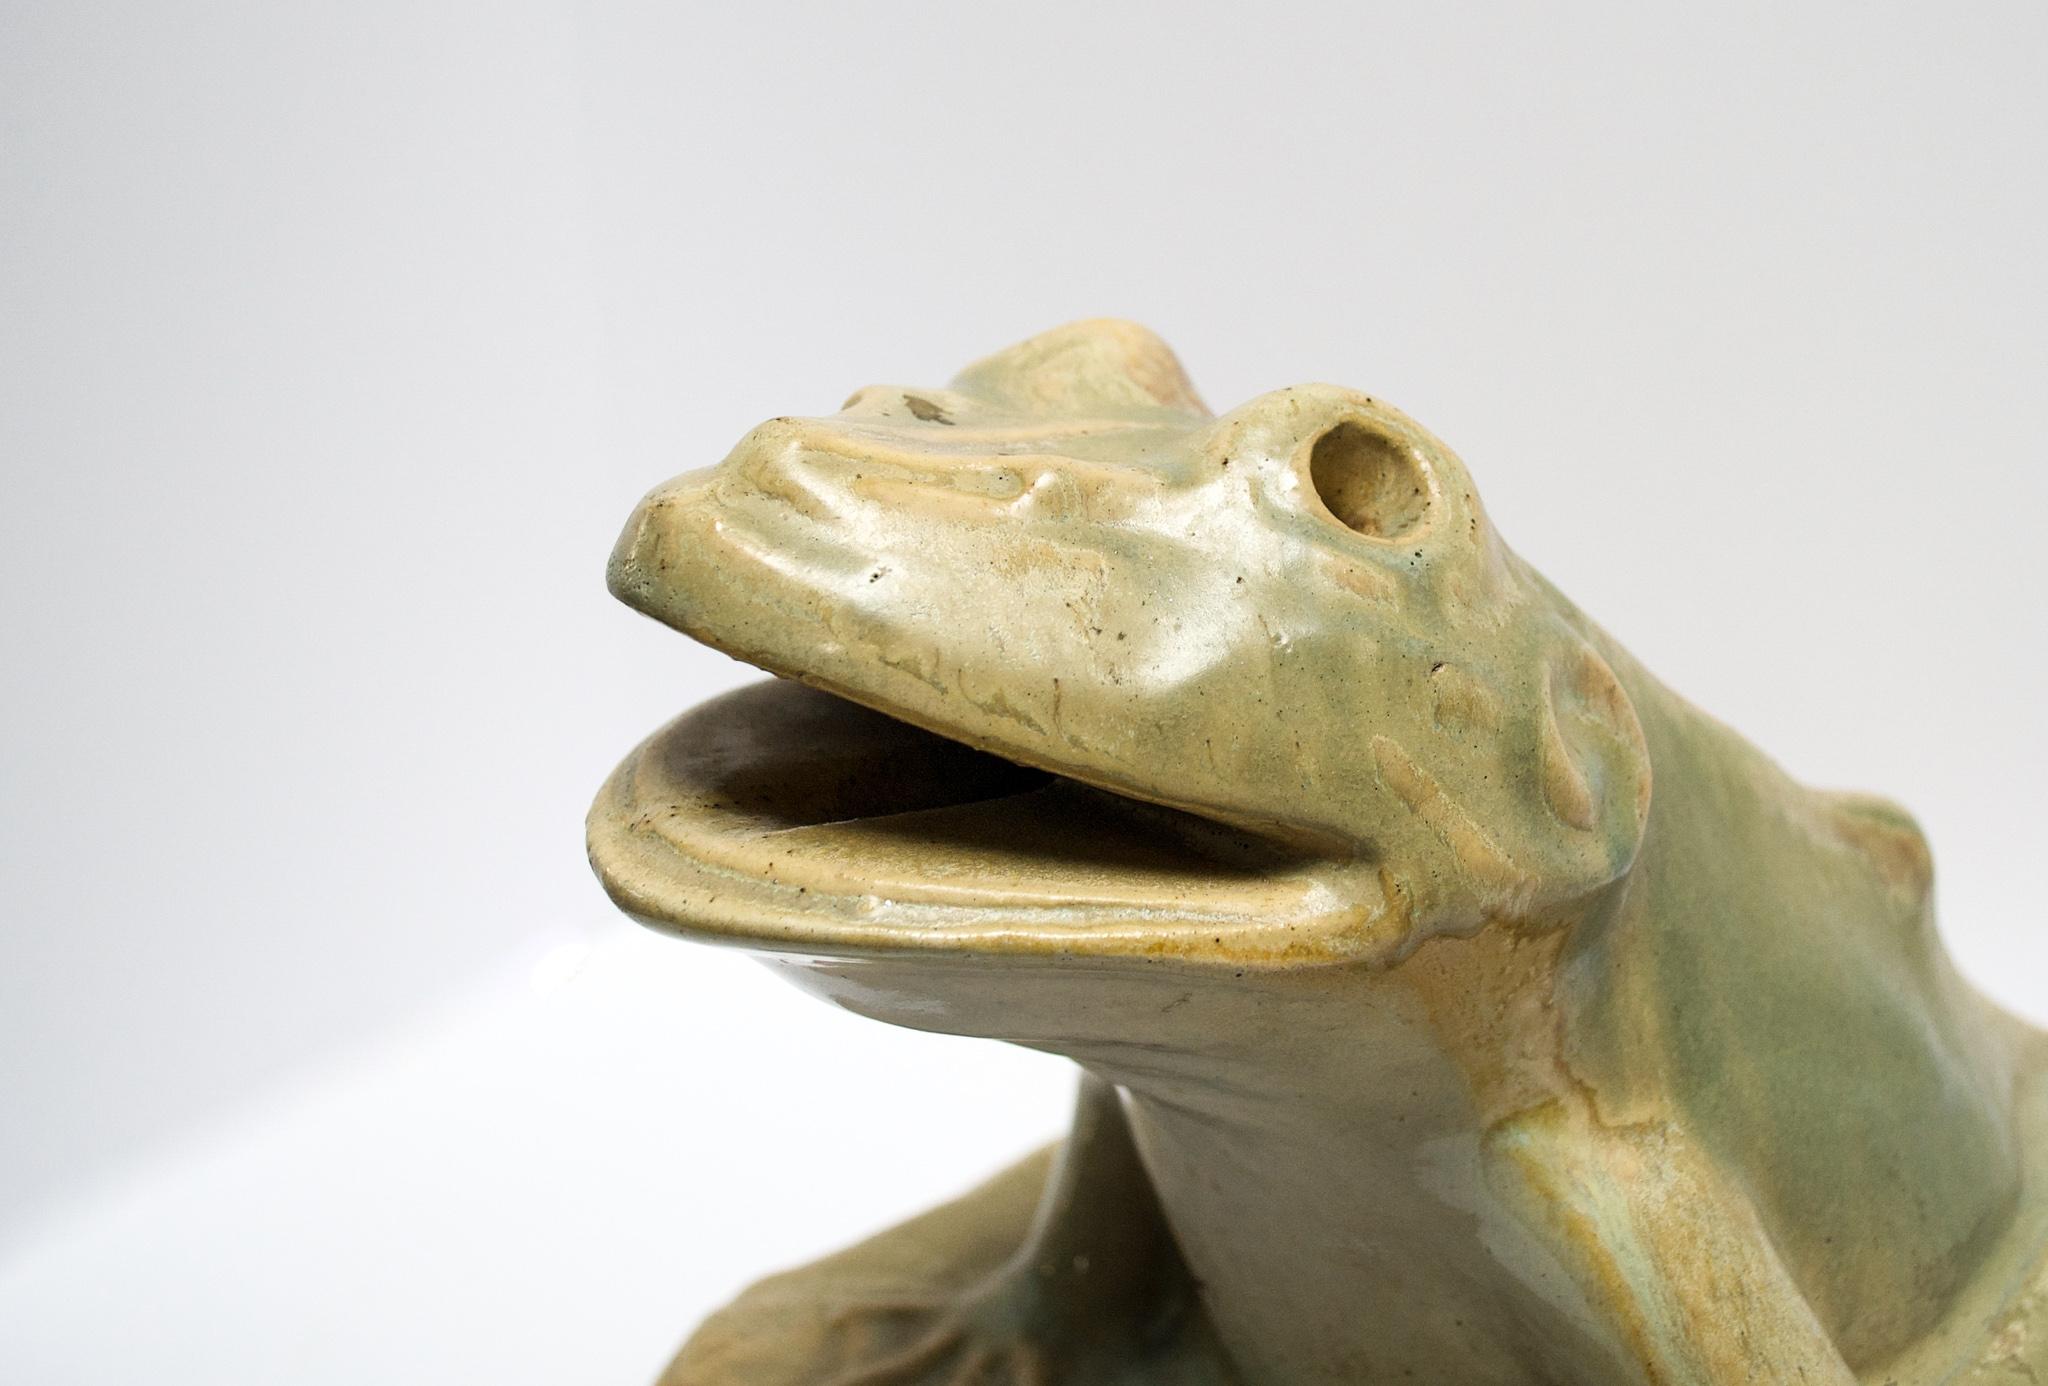 Dieser Vintage-Keramik-Froschbrunnen ist eine charmante Statue, die in einem Wasserspiel verwendet werden kann oder als versteckter Gartenfreund für sich alleine steht. Die Öffnung an der Basis zum Mund kann als Wasserausgang genutzt werden. Schöne